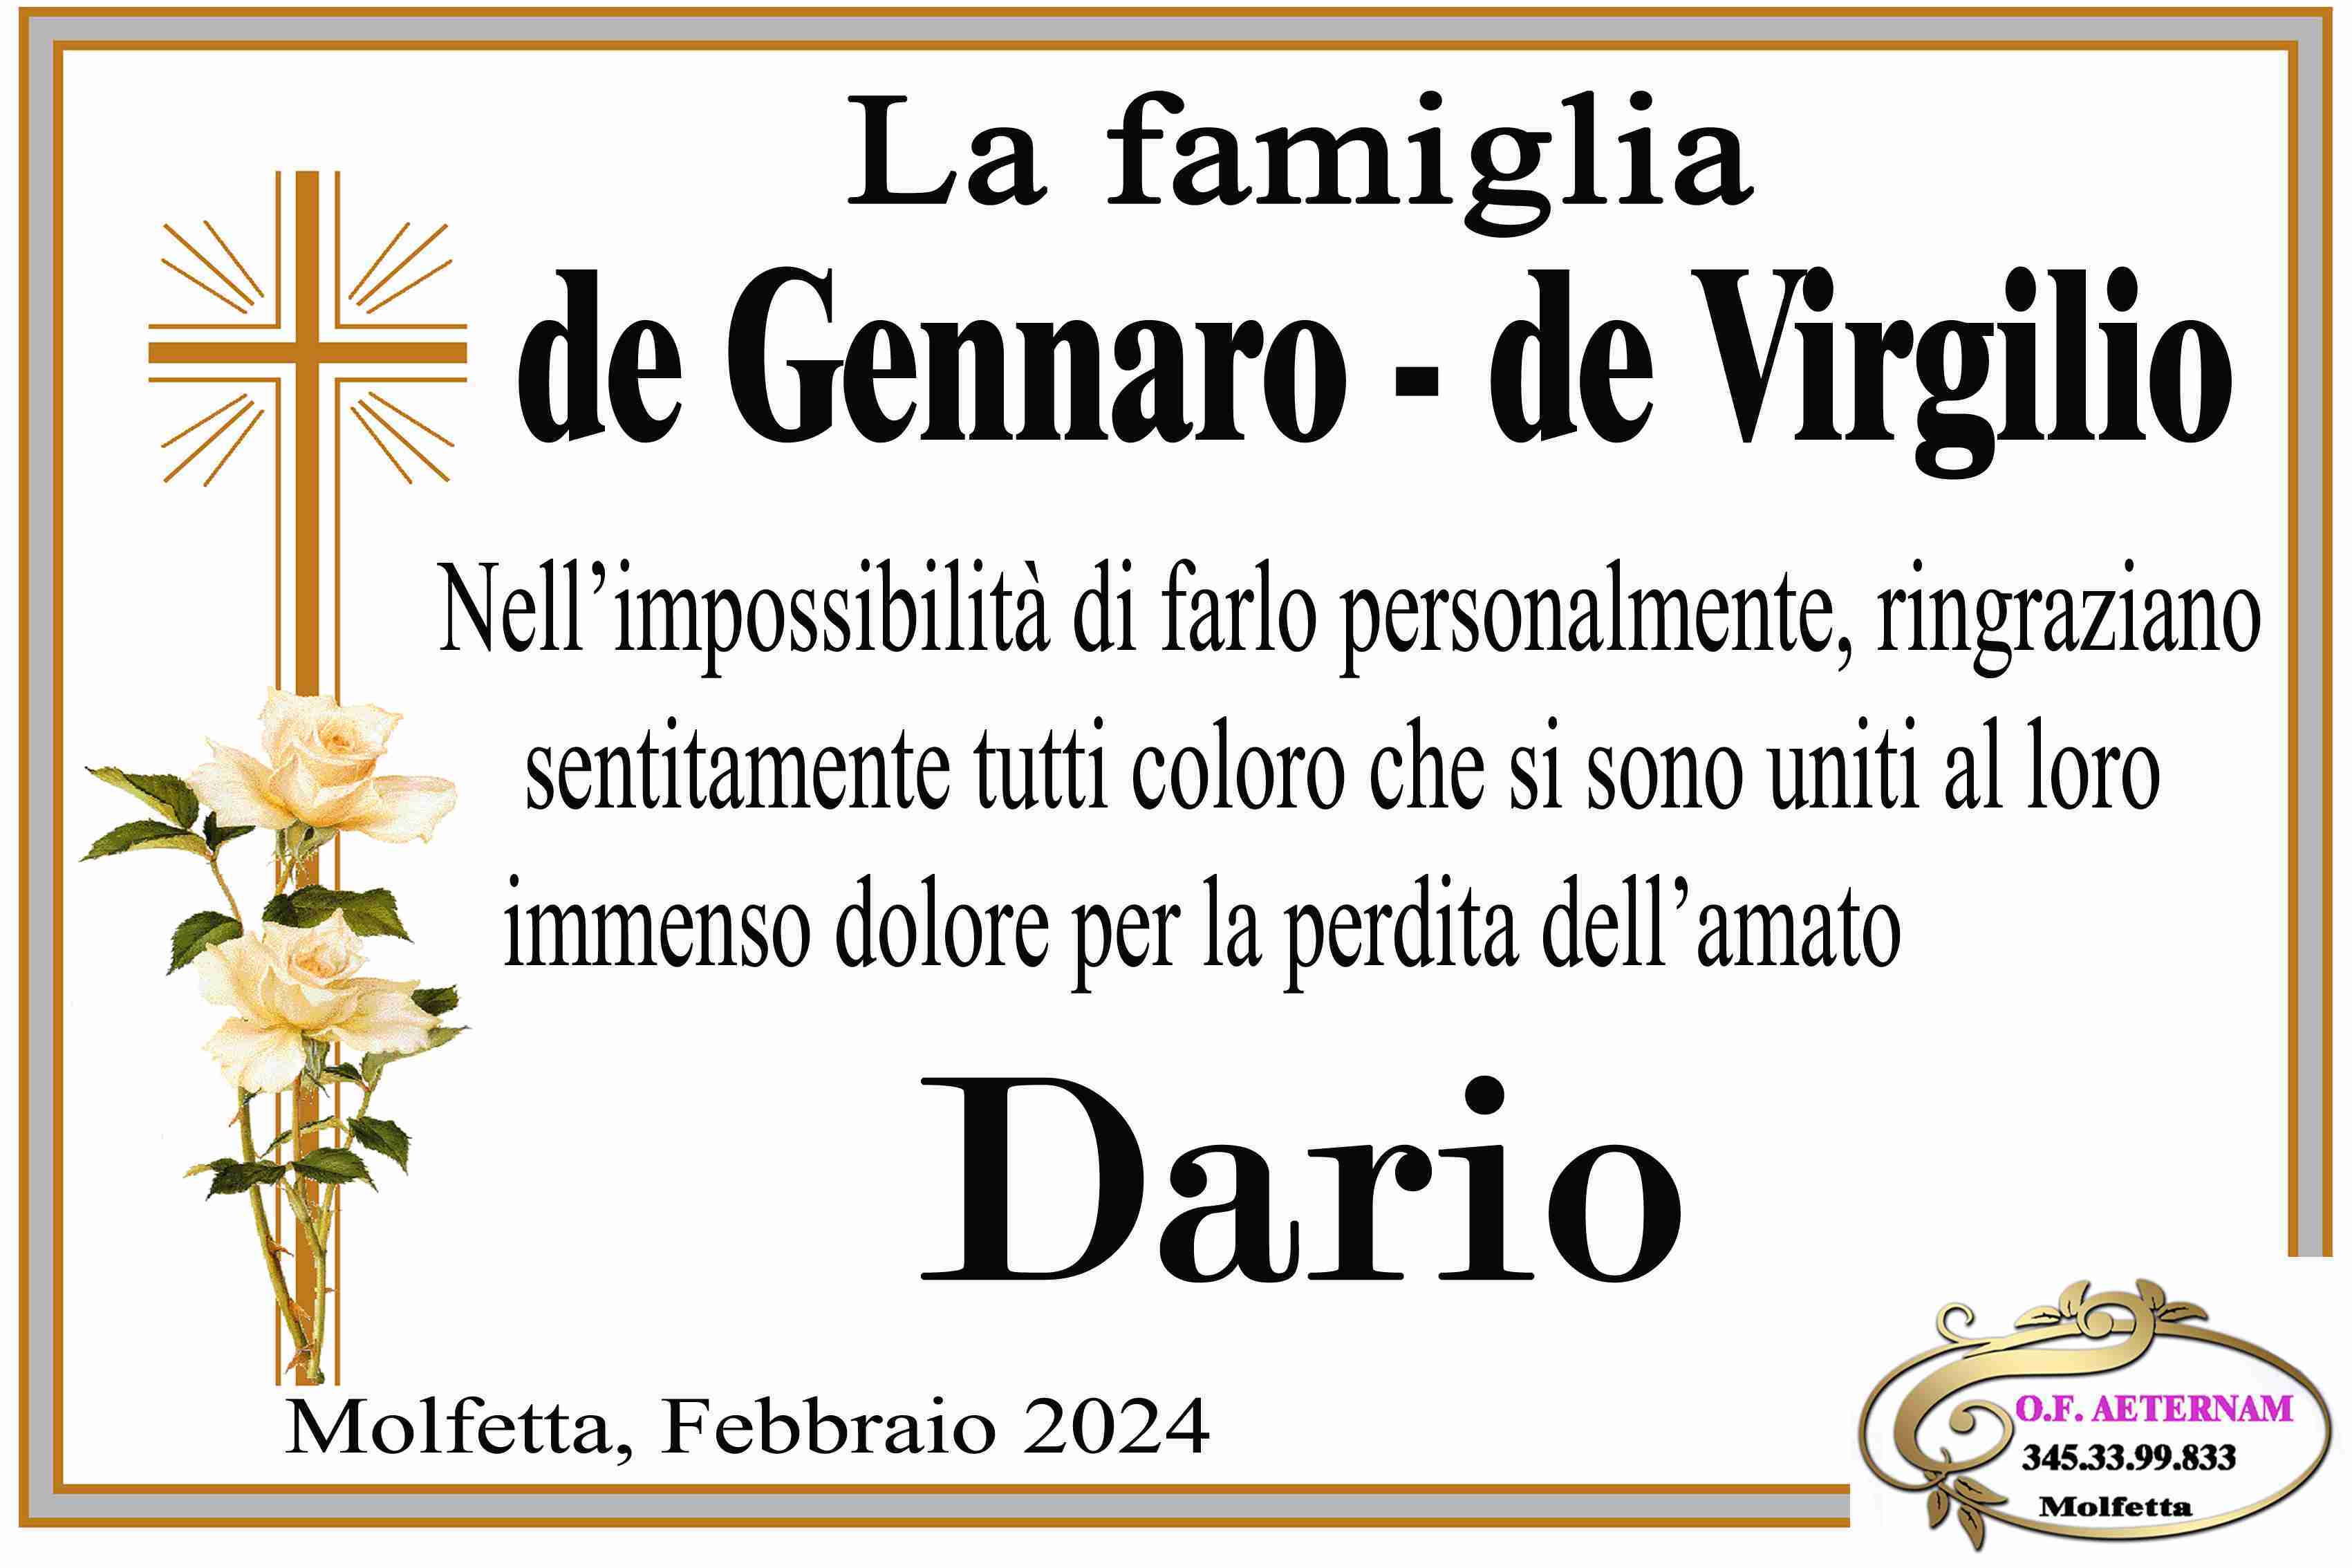 Dario De Gennaro